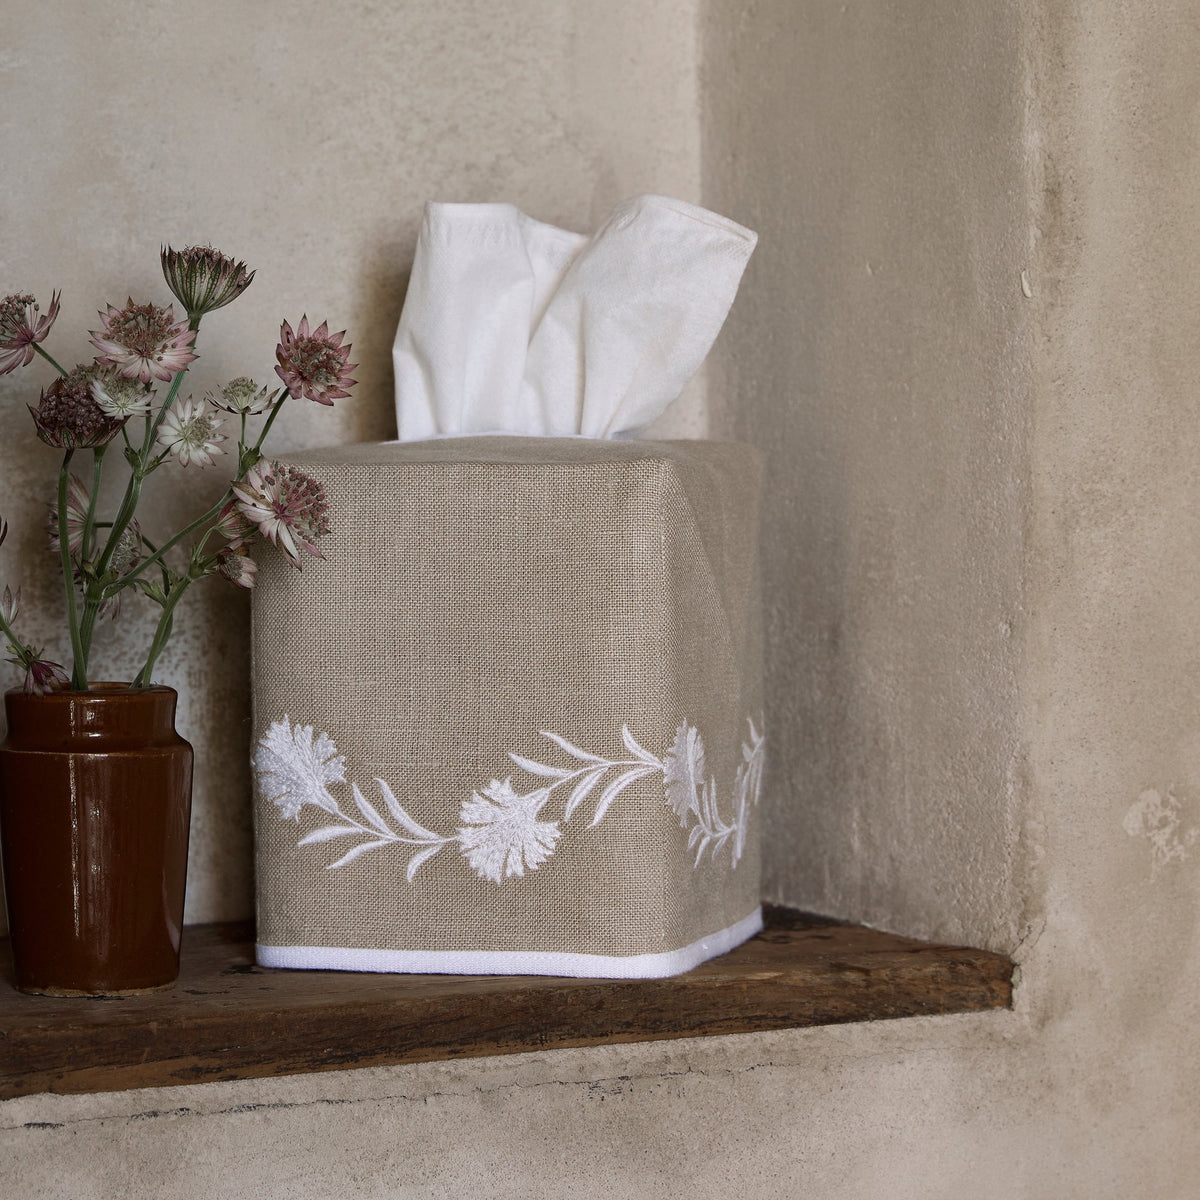 Matouk Daphne Tissue Box Cover - Oat / White